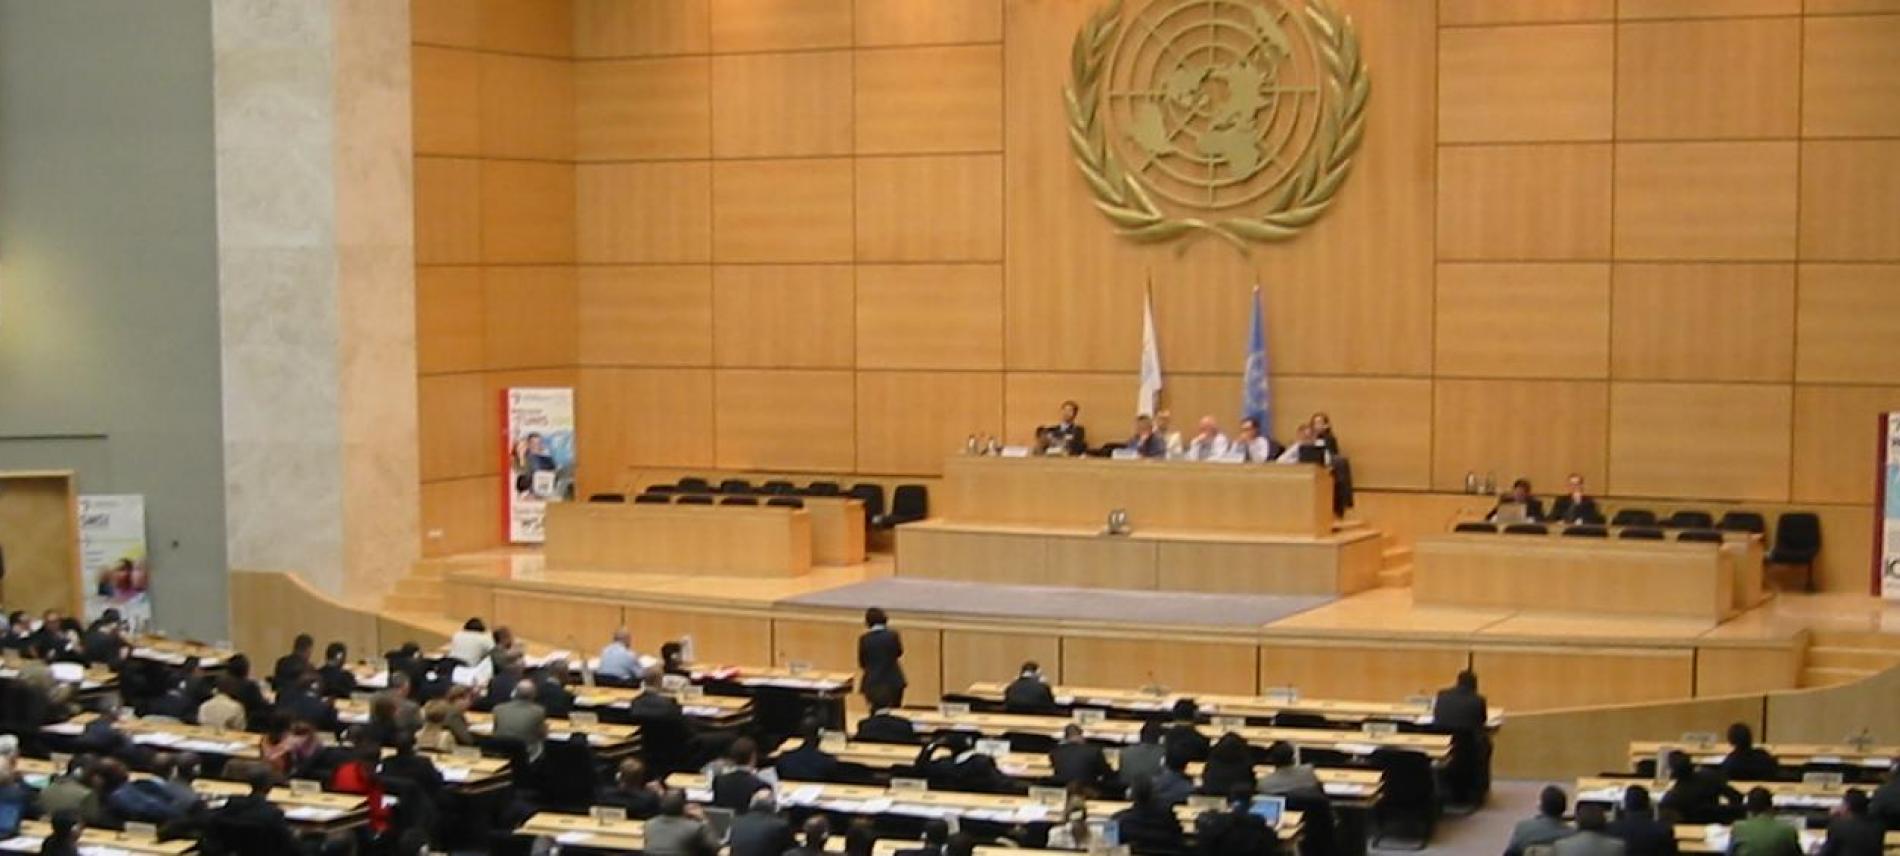 Sitzungssaal des UN-Sitzes in Genf